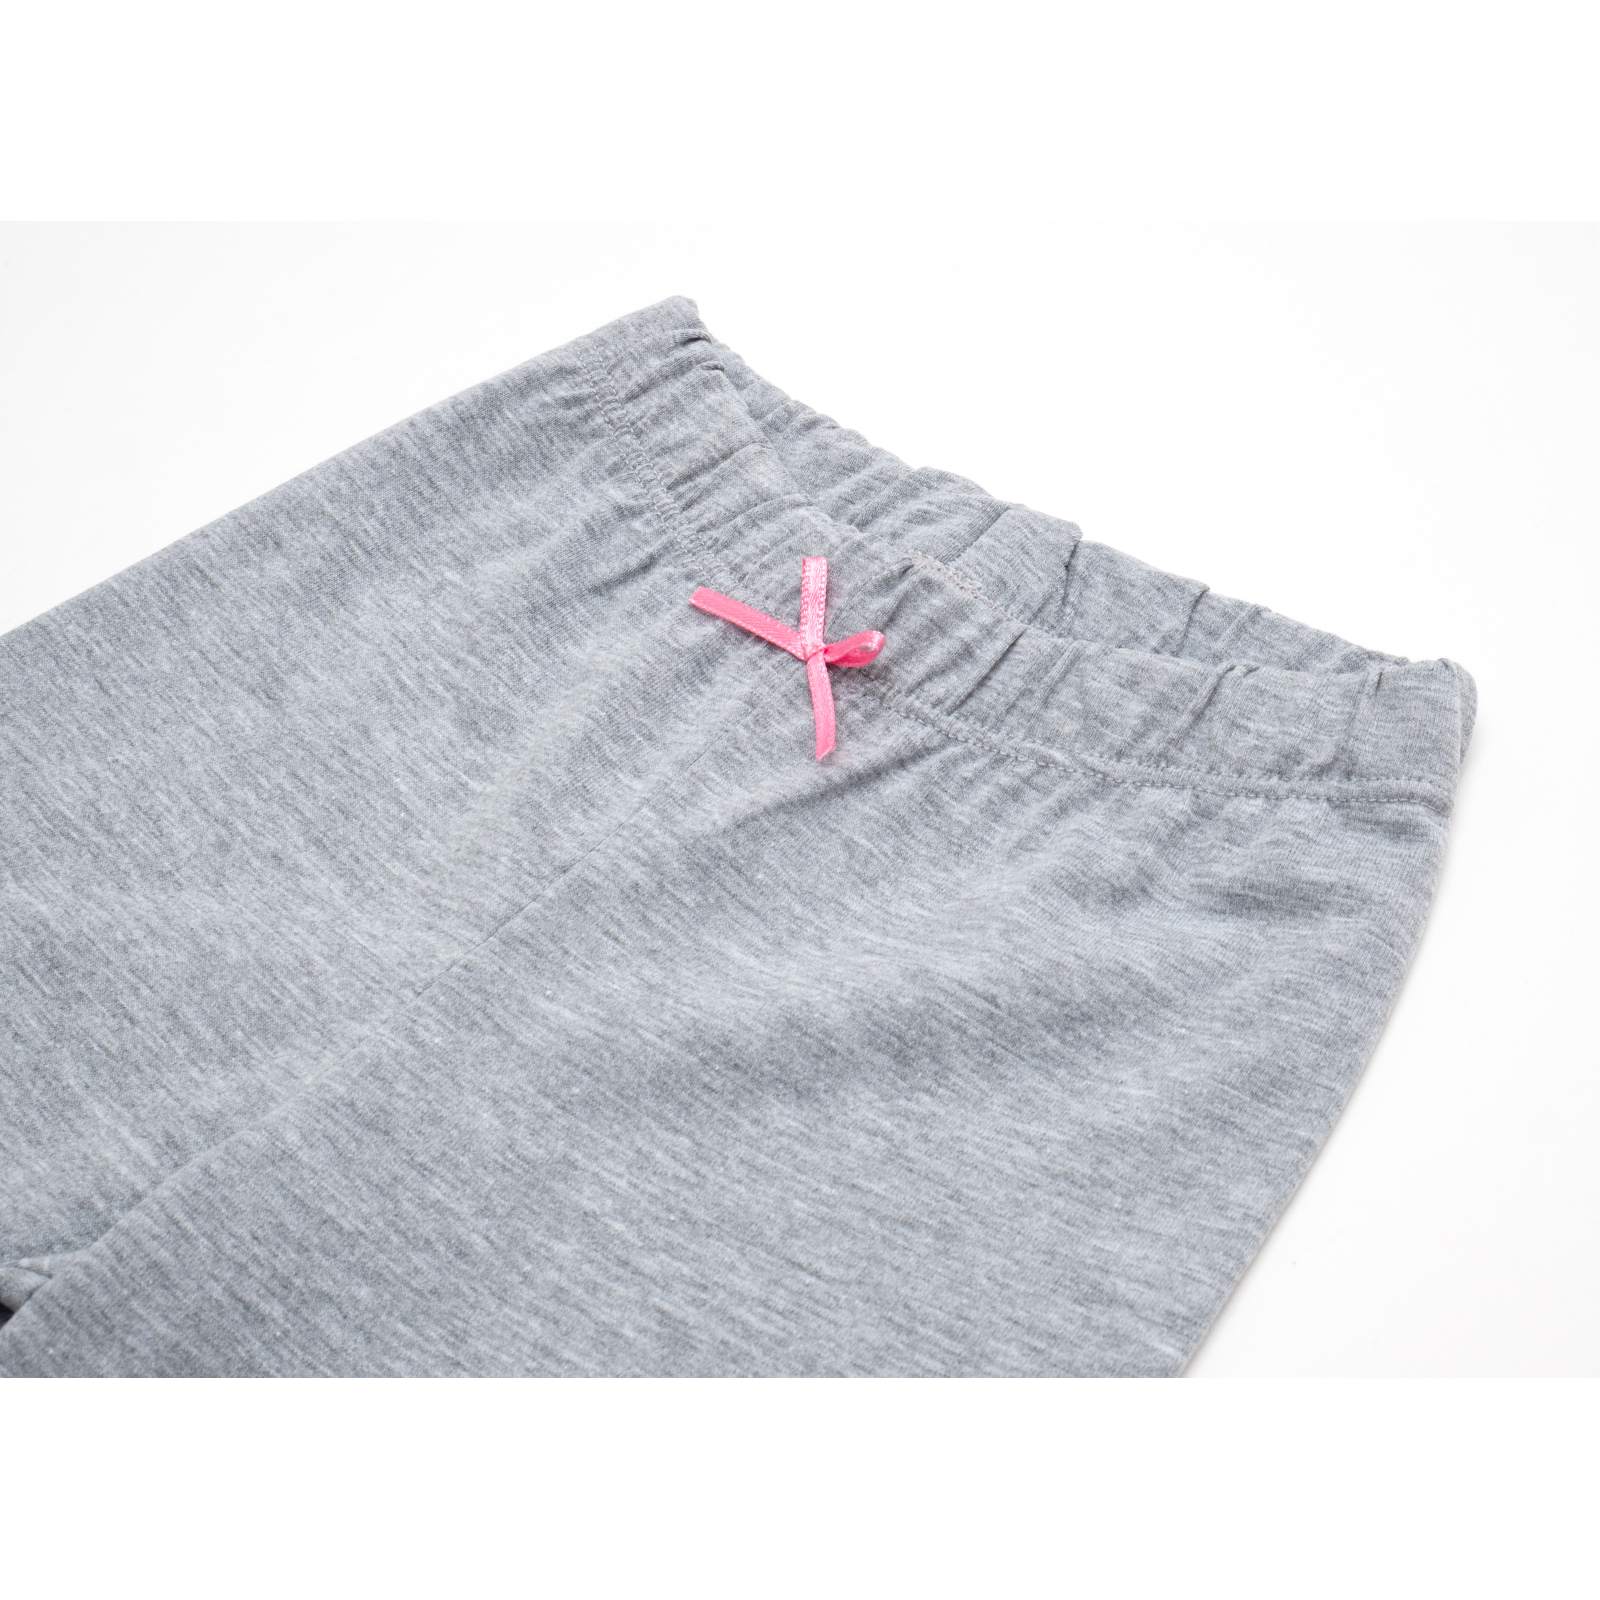 Пижама Matilda со звездочками (7167-110G-pink) изображение 8